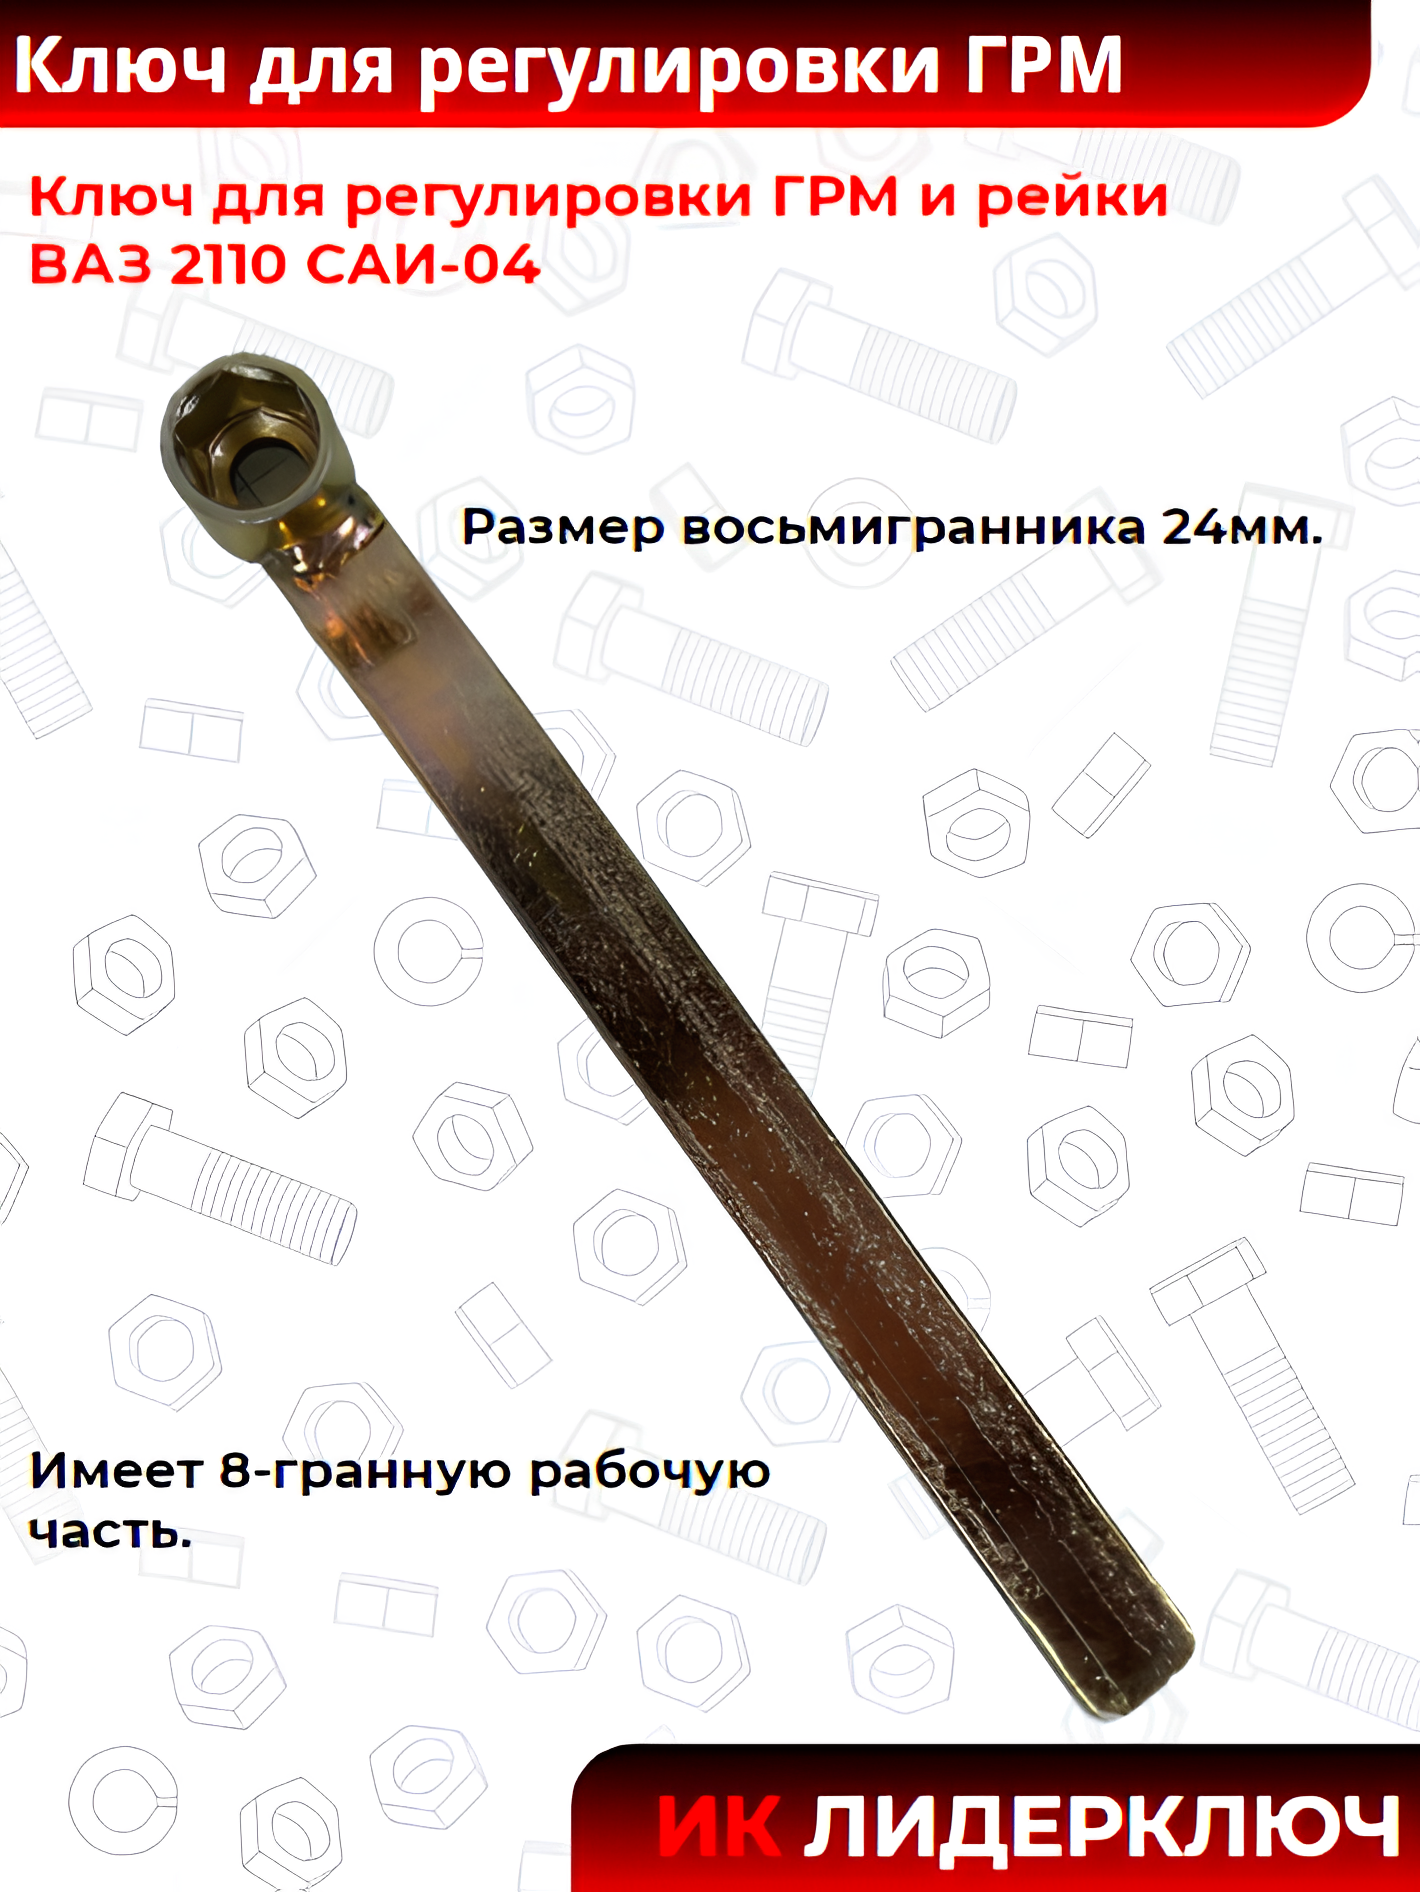 Ключ для регулировки ГРМ и рейки ВАЗ 2110 САИ-04